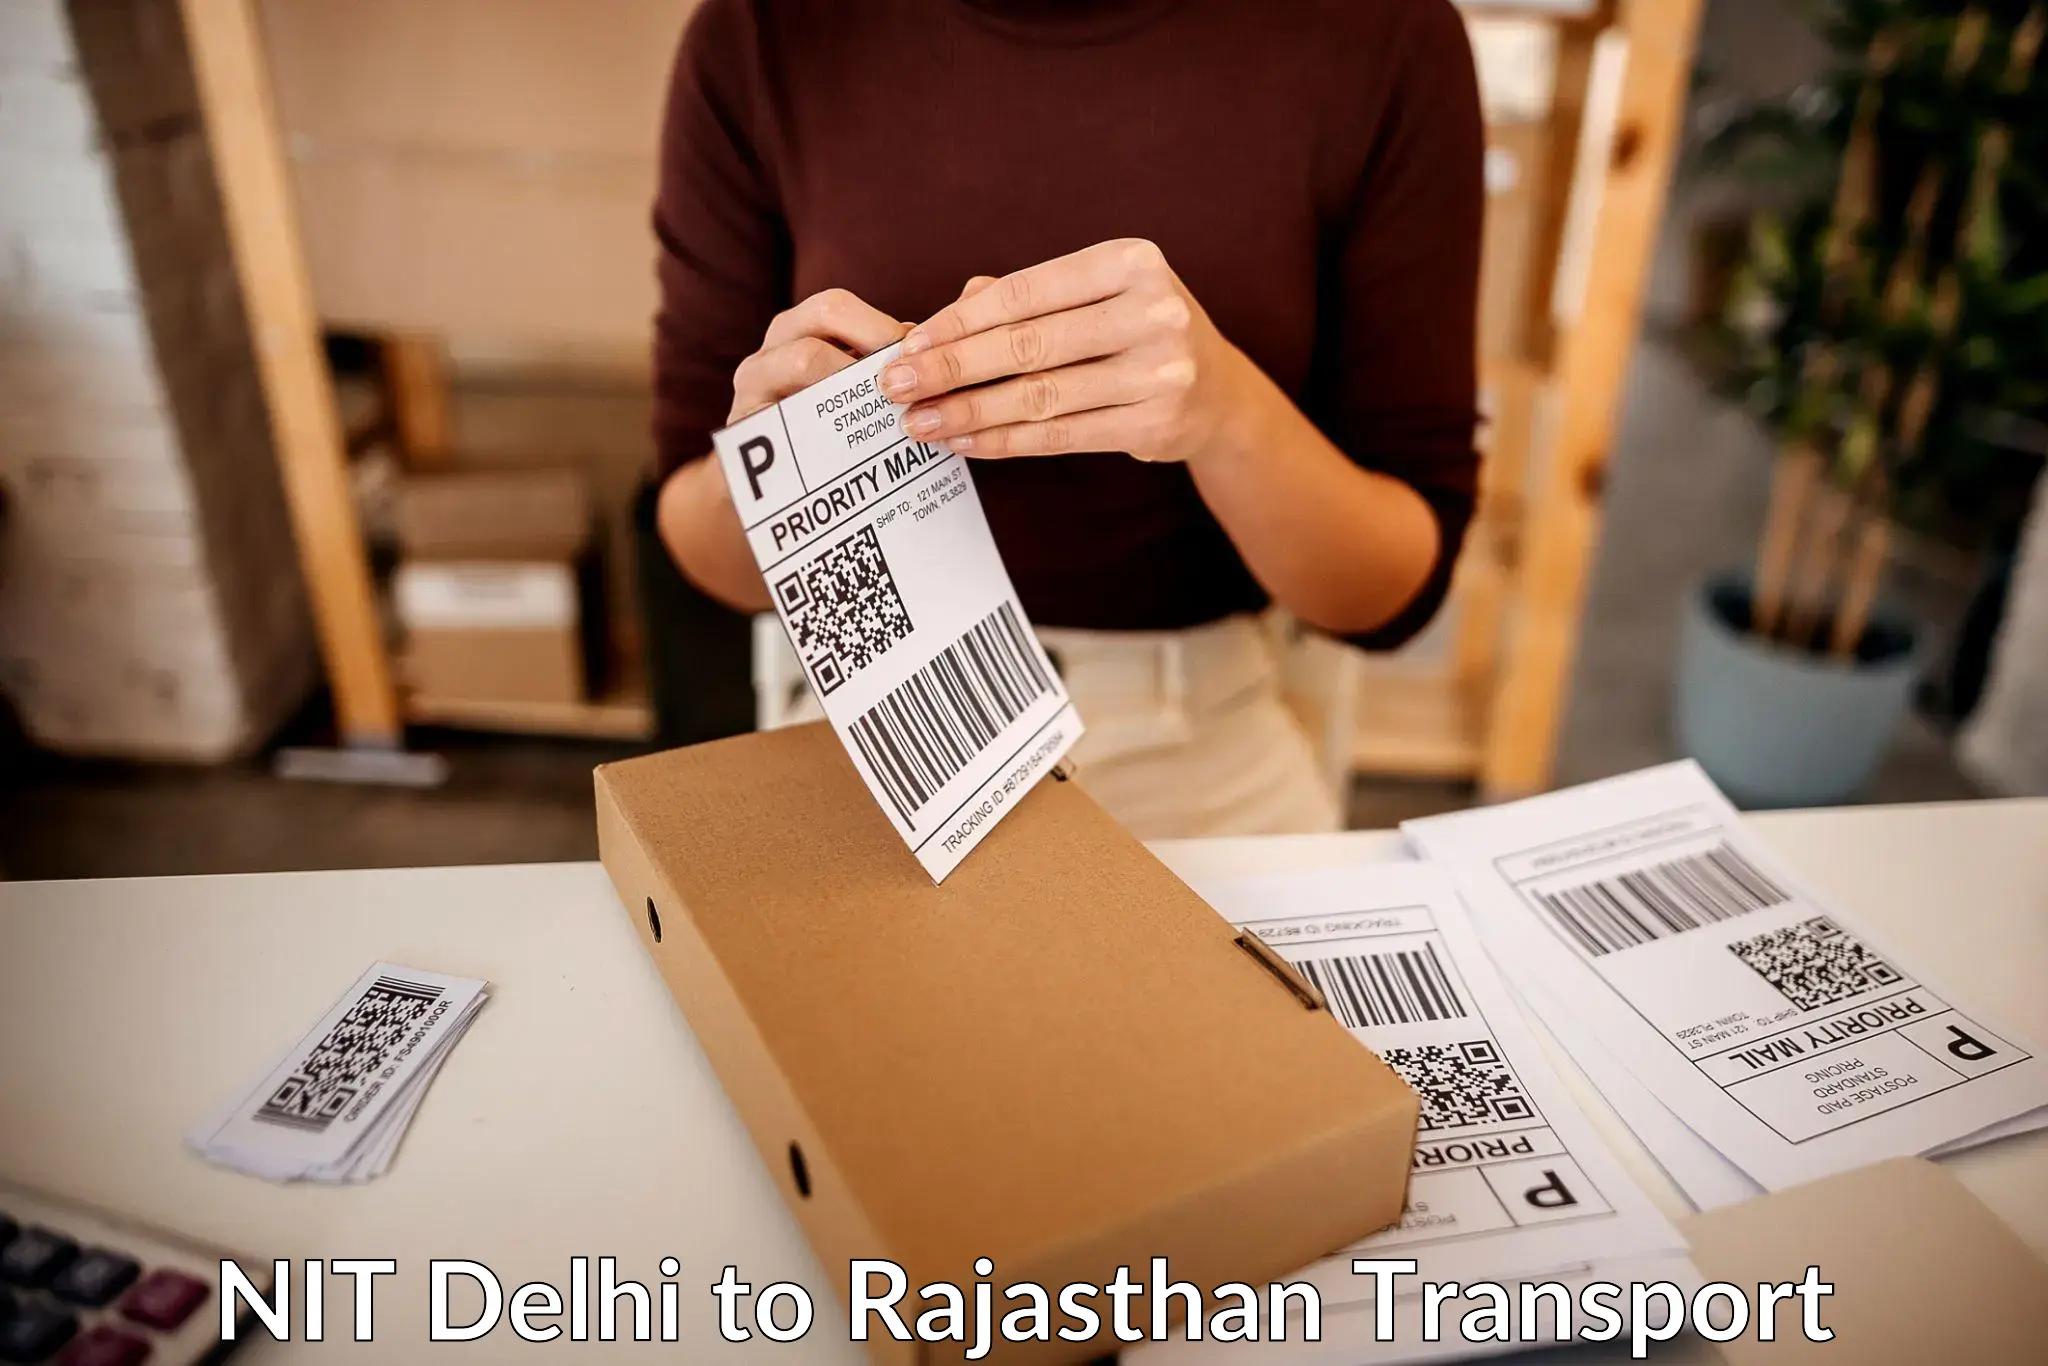 Furniture transport service NIT Delhi to Asind